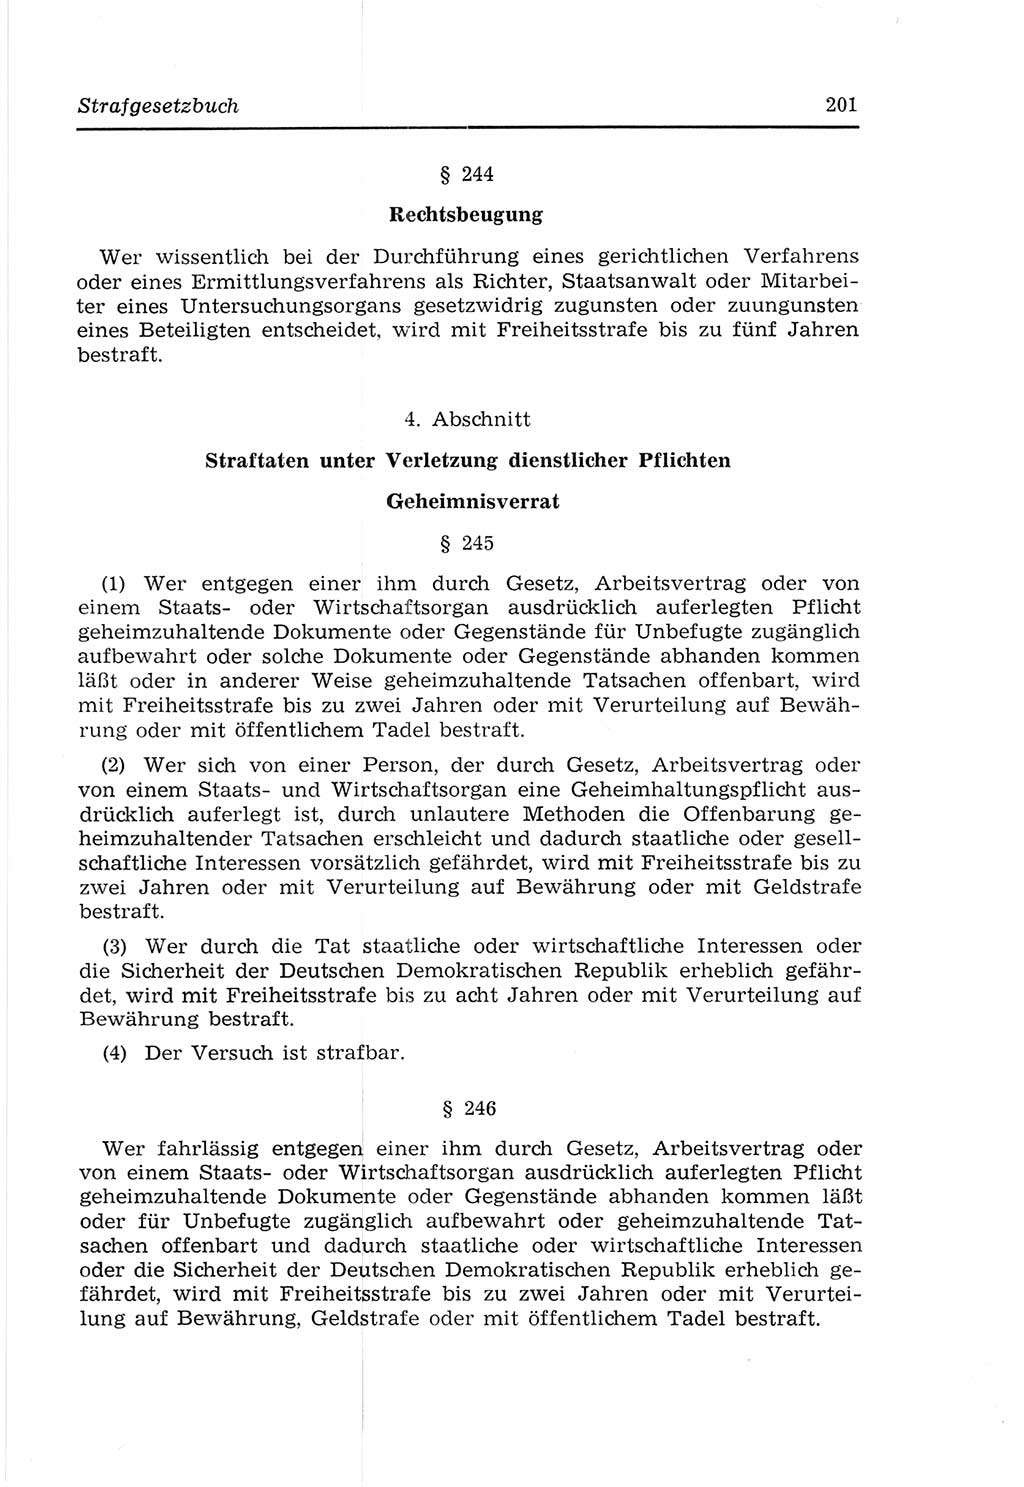 Strafvollzugs- und Wiedereingliederungsgesetz (SVWG) der Deutschen Demokratischen Republik (DDR) 1968, Seite 201 (SVWG DDR 1968, S. 201)